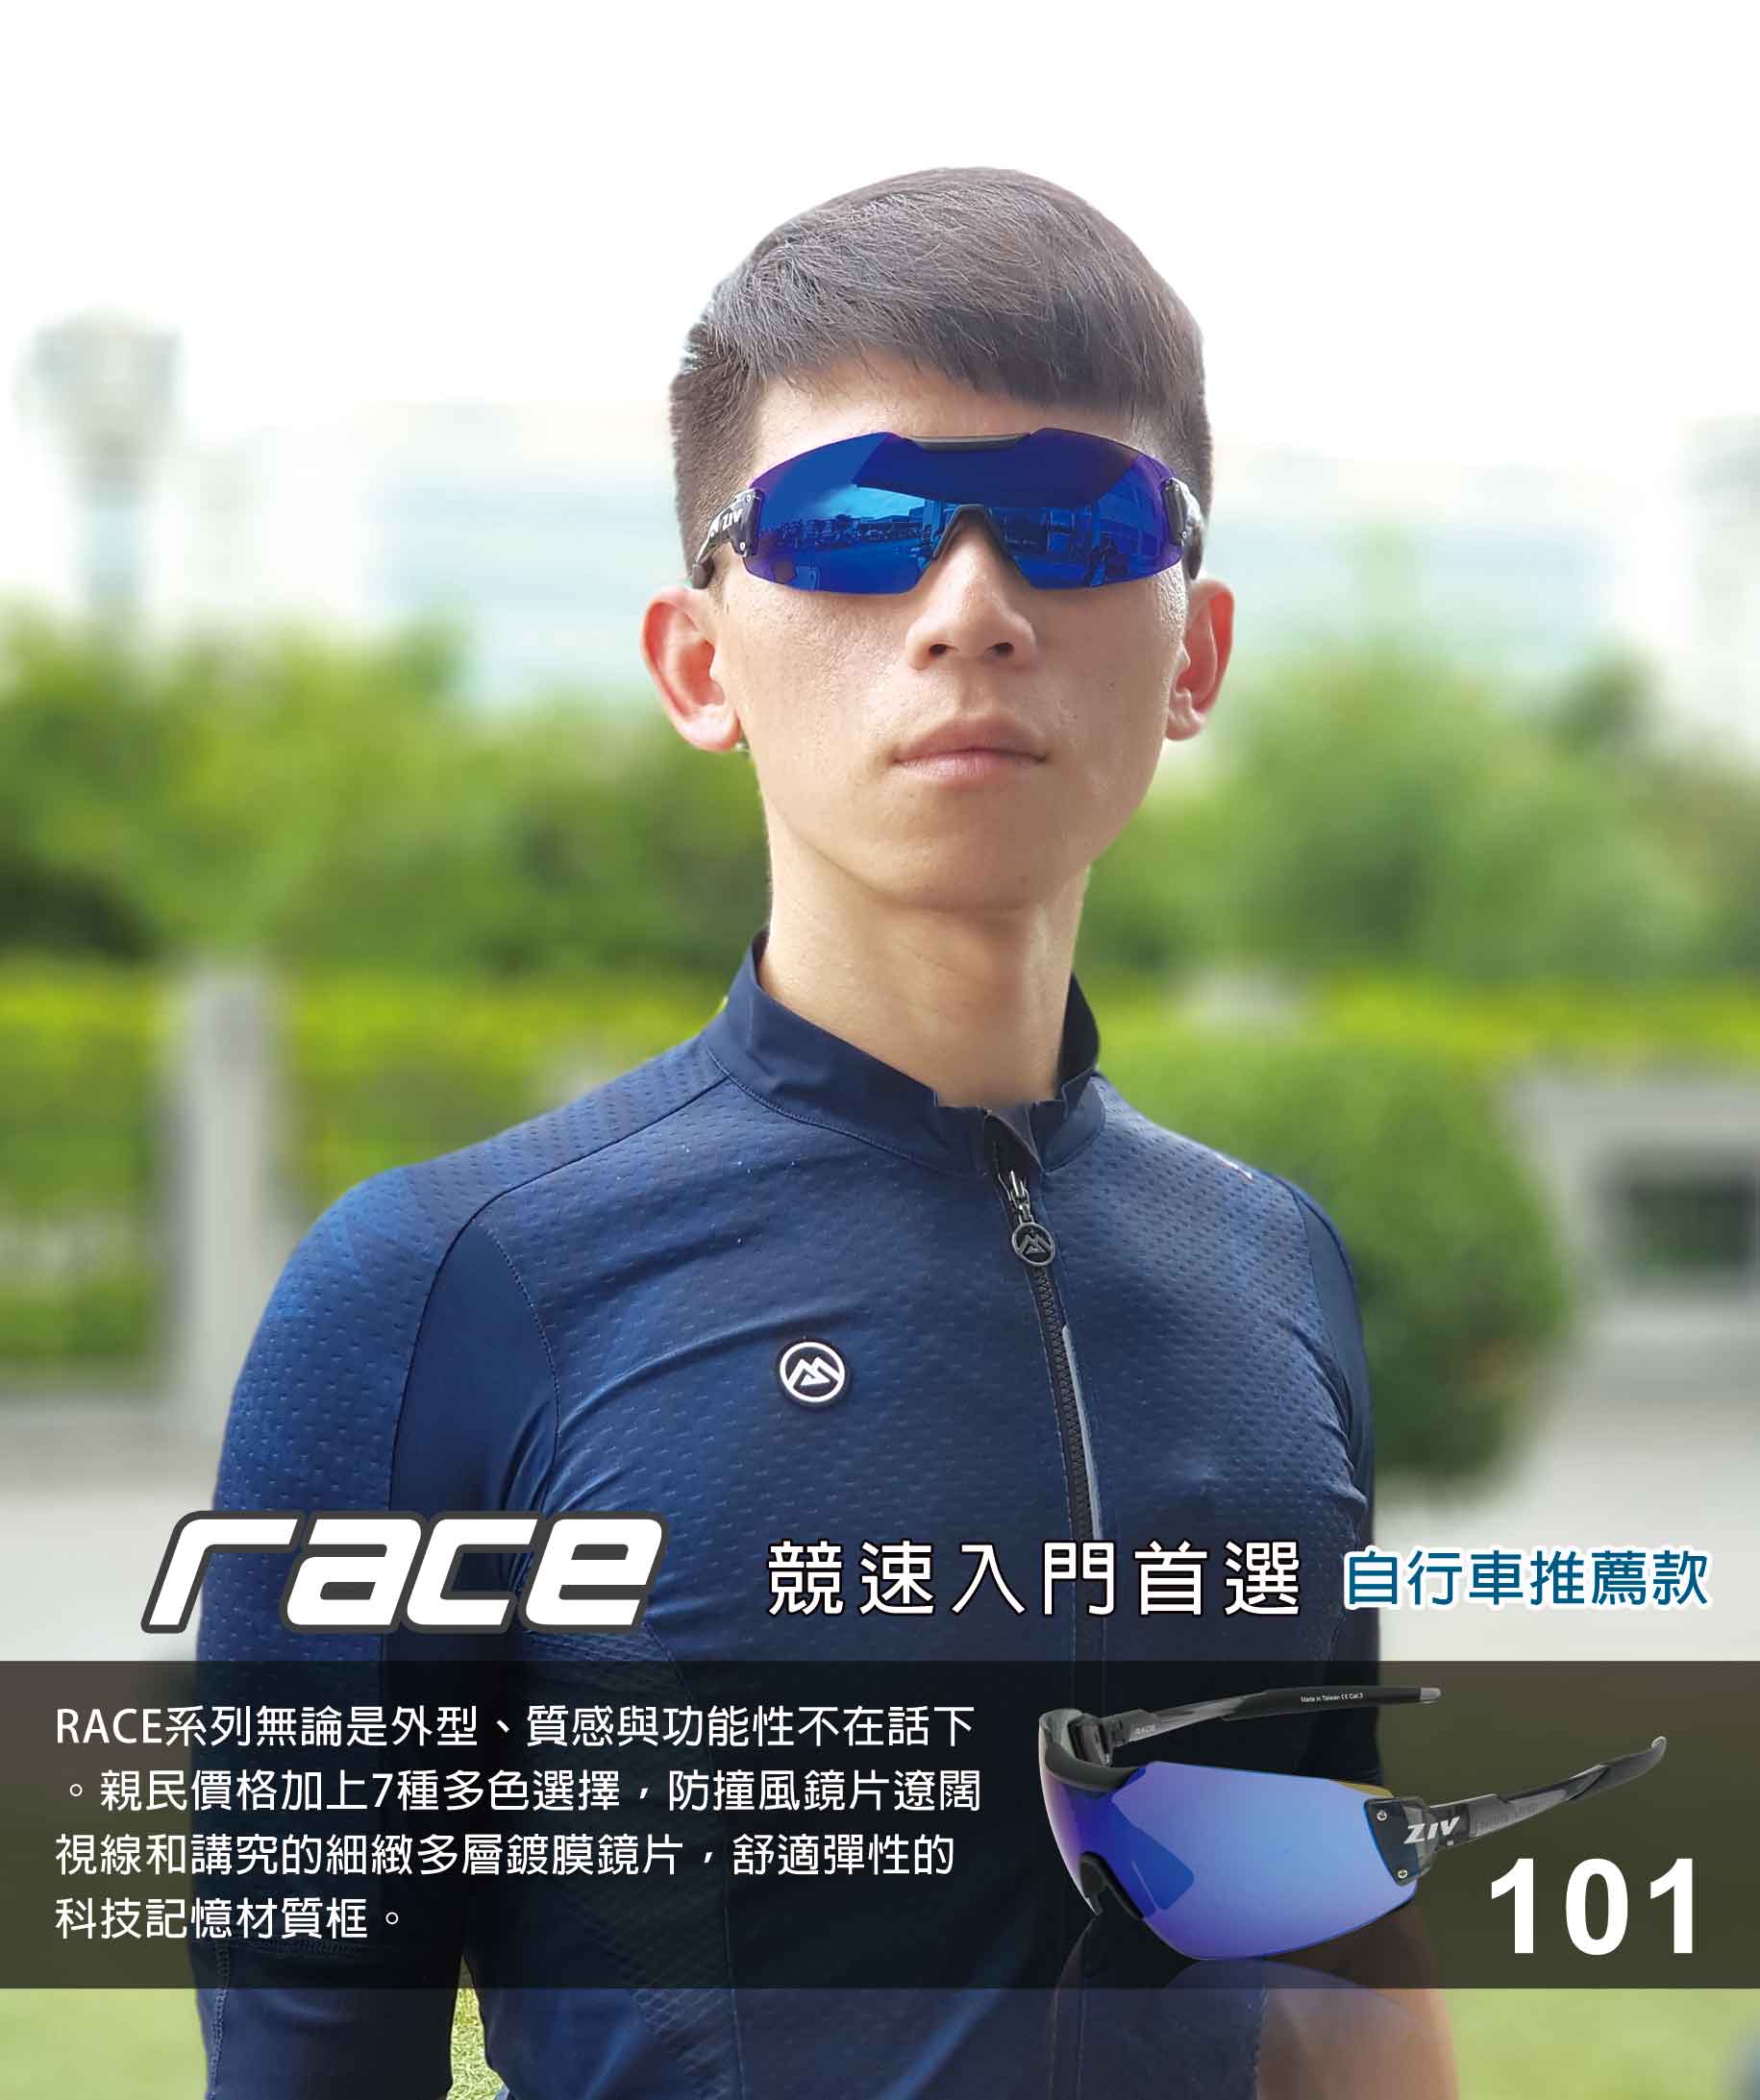 RACE系列-101 亮透明灰